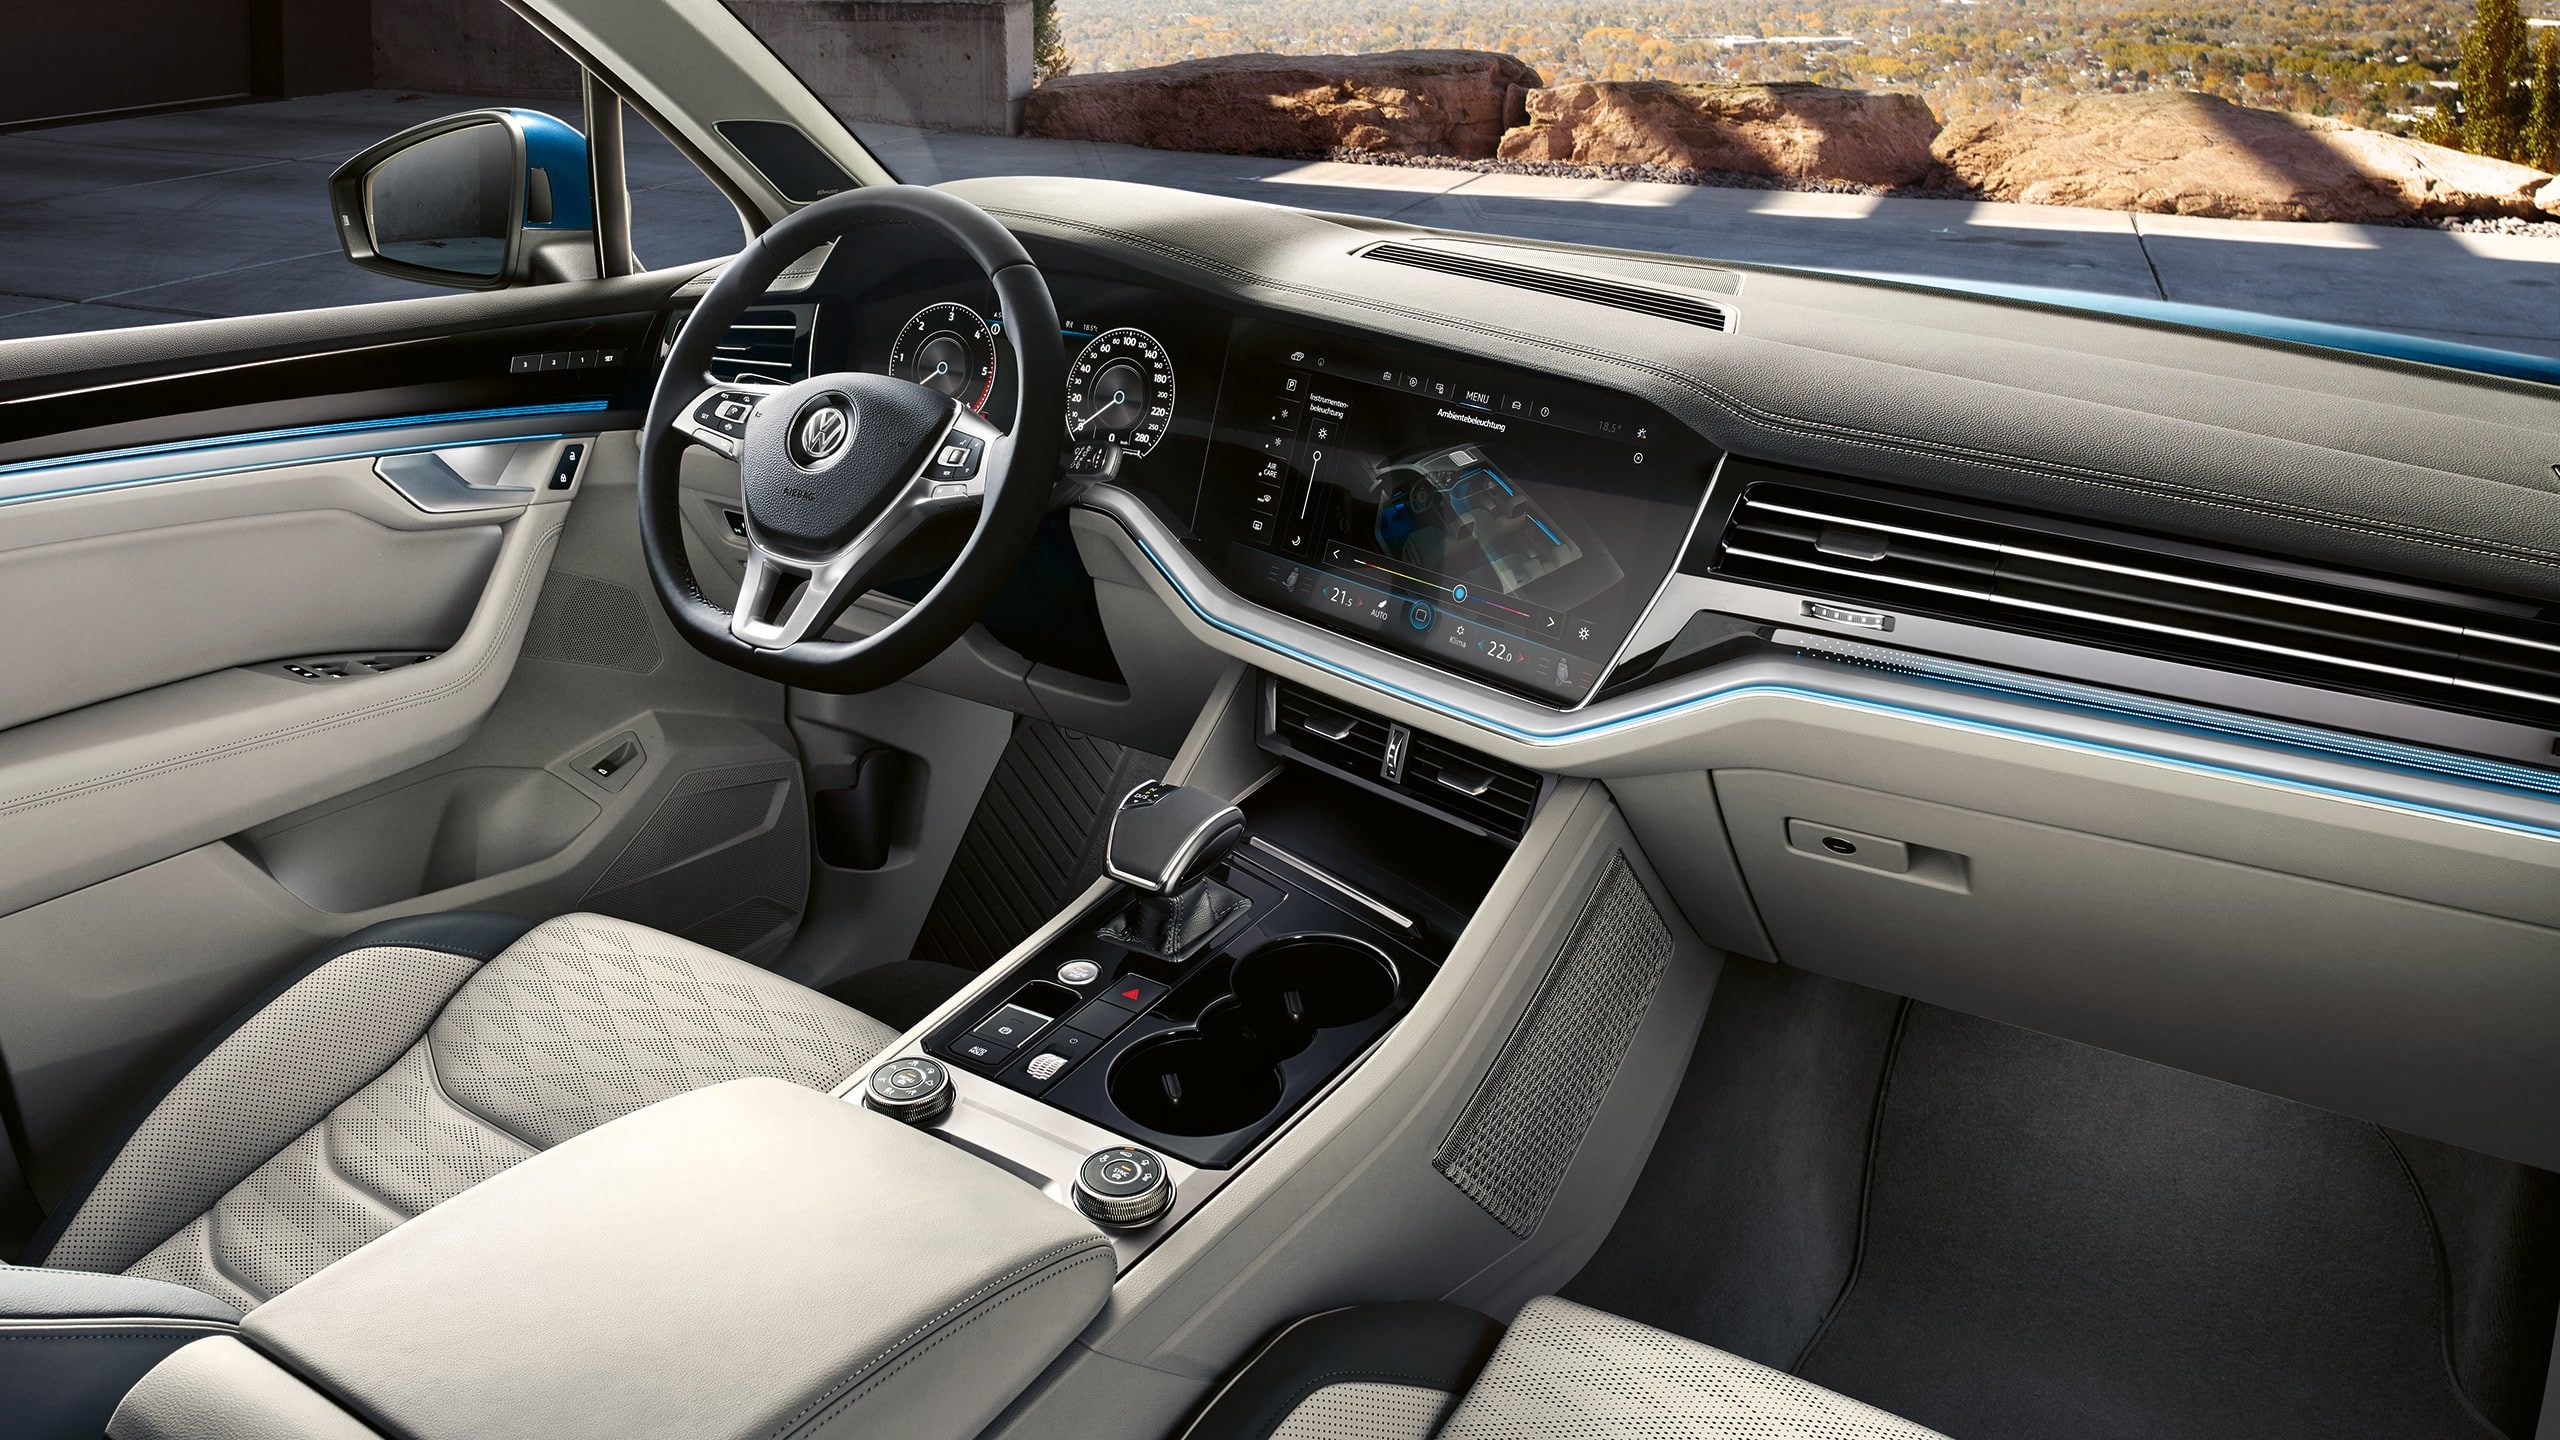 Дизайн, практичность и уровень комфортабельности салона - «зона» особо пристального внимания  в модели Volkswagen Touareg.